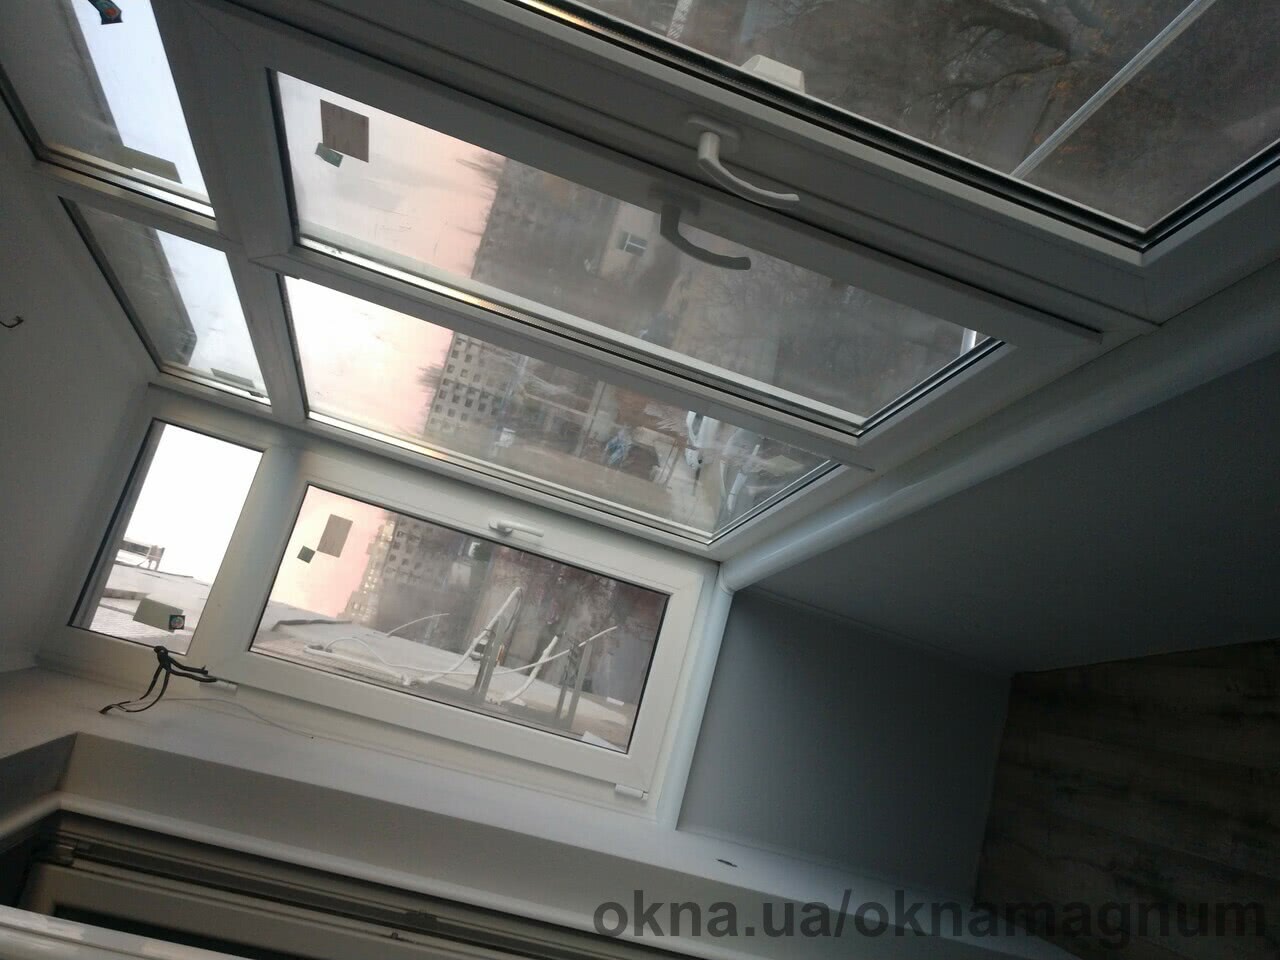 Прошел успешный монтаж балкона с двухкамерными теплыми мультифункциональными стеклопакетами